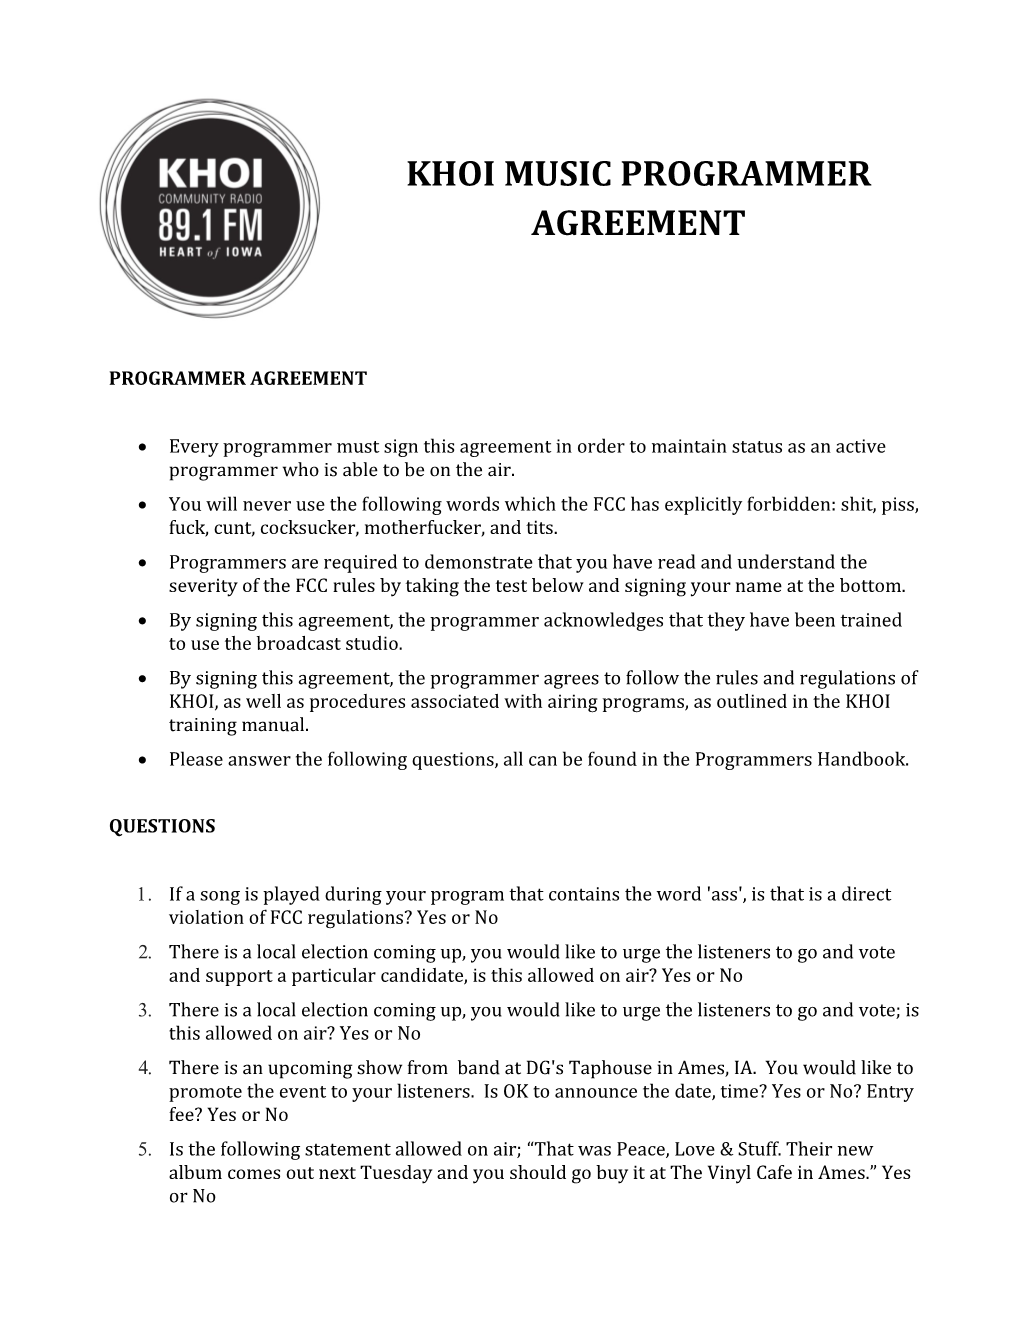 KHOI Music Programmer AGREEMENT